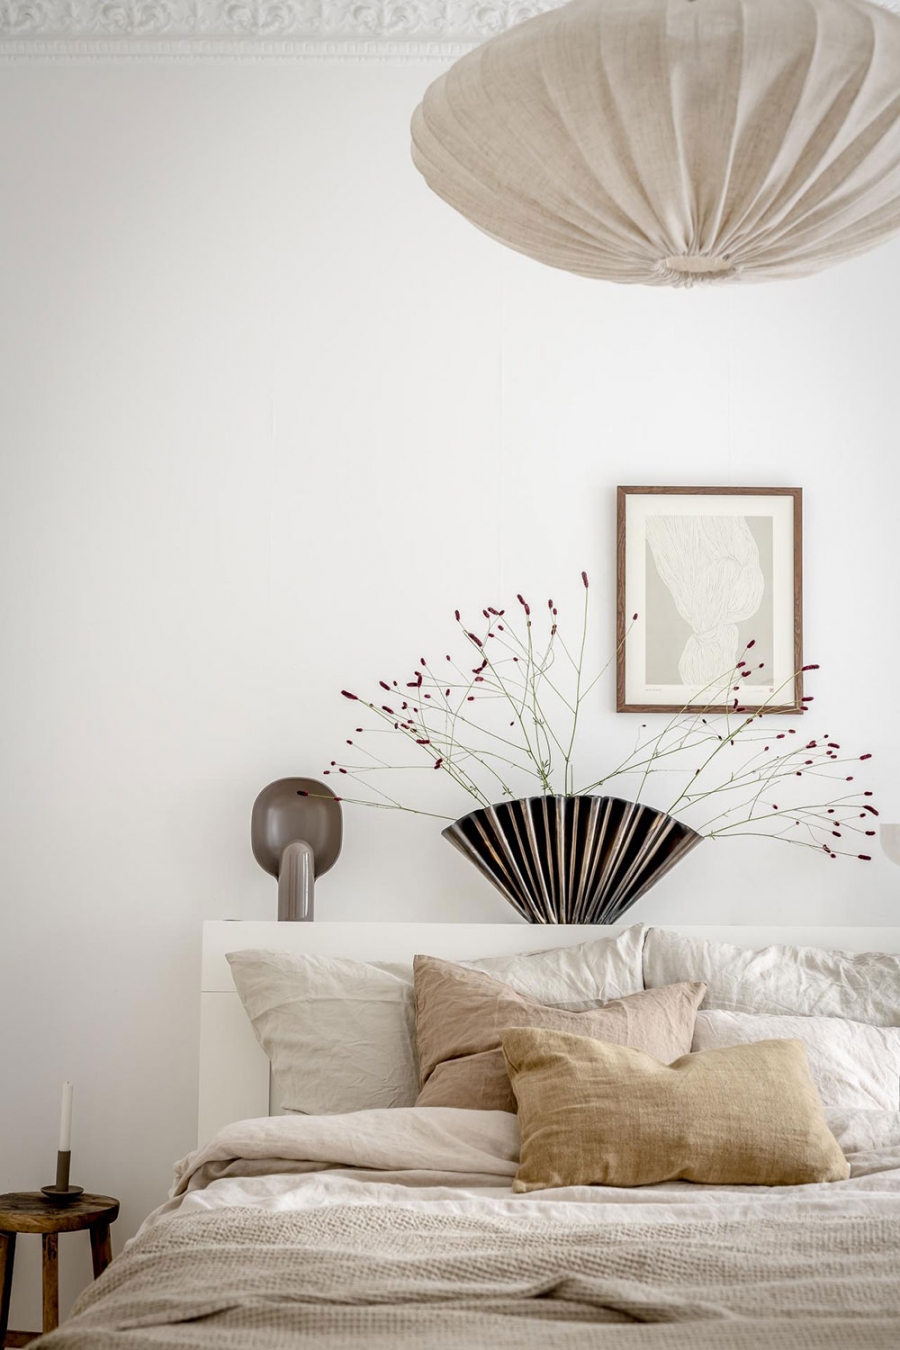 Cũng giống như phong cách chủ đạo của căn hộ, phòng ngủ cũng mang một nét đẹp nhẹ nhàng, tối giản màu sắc nhưng nội thất tiện nghi, đảm bảo tạo ra một không gian thư giãn ngập tràn cảm hứng.